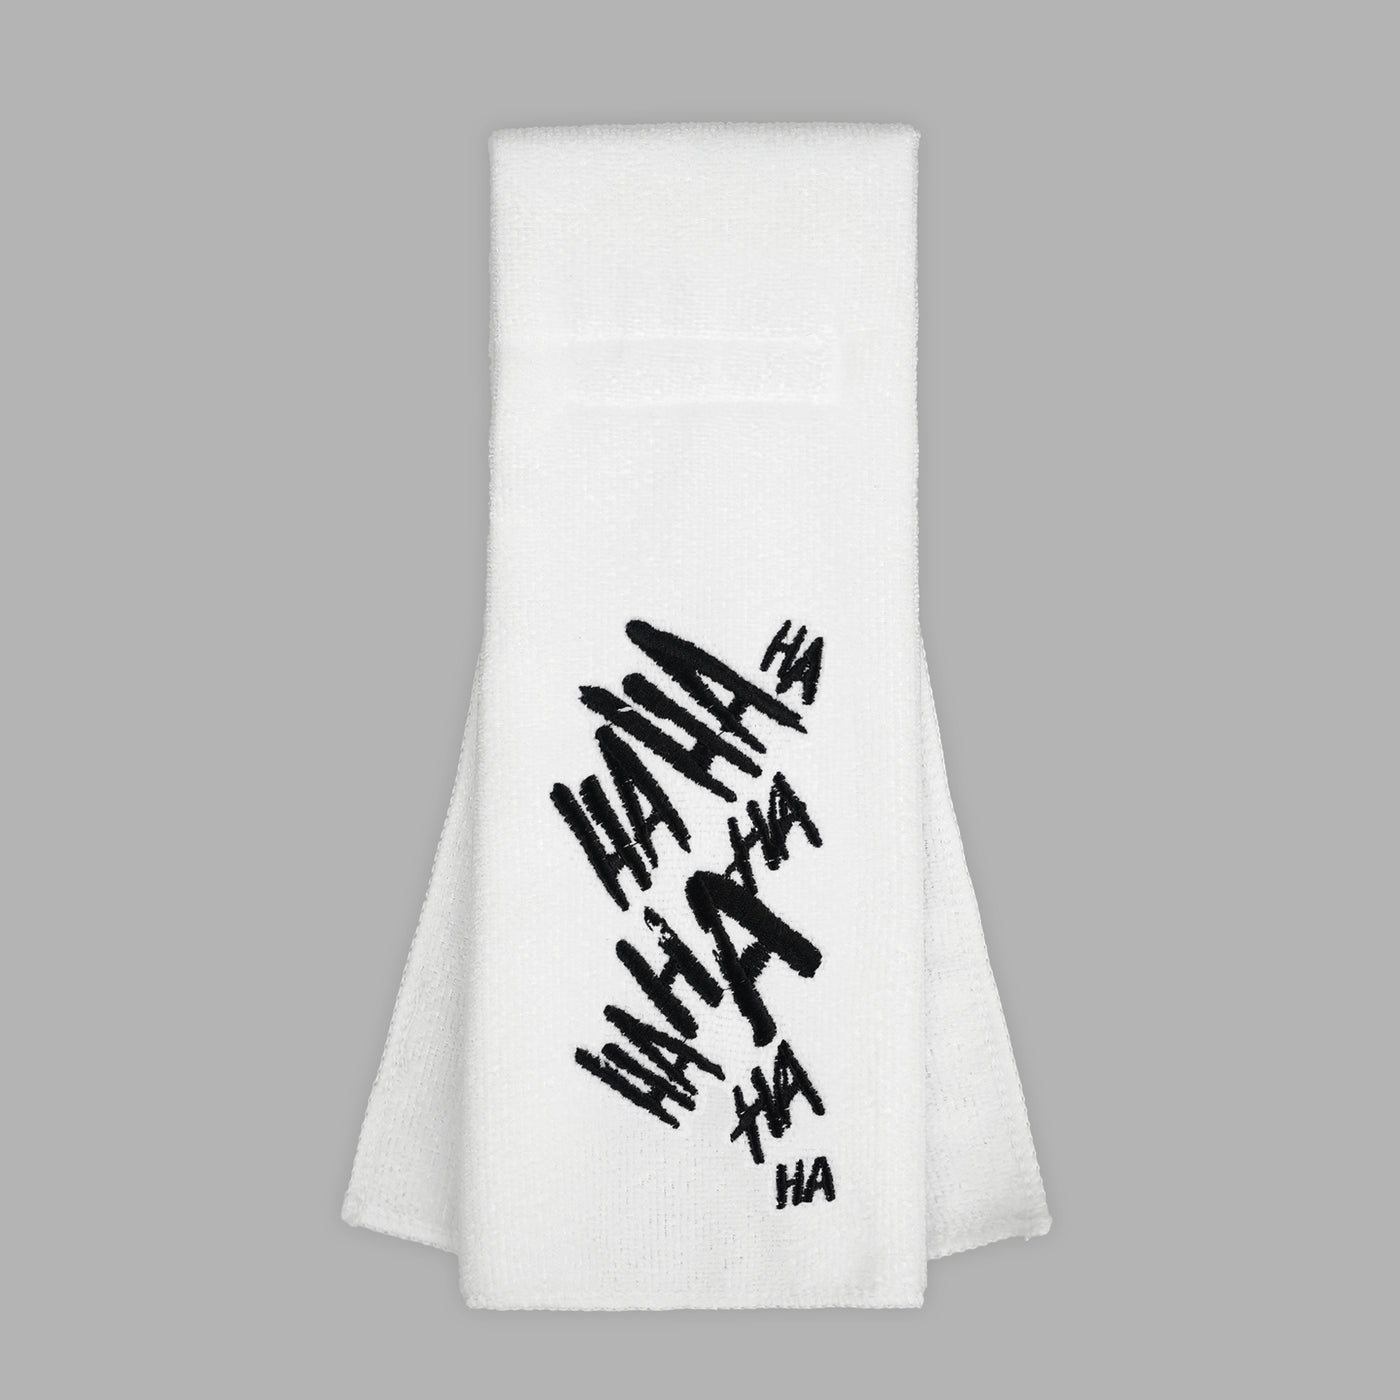 Ha Ha Ha White Football Towel